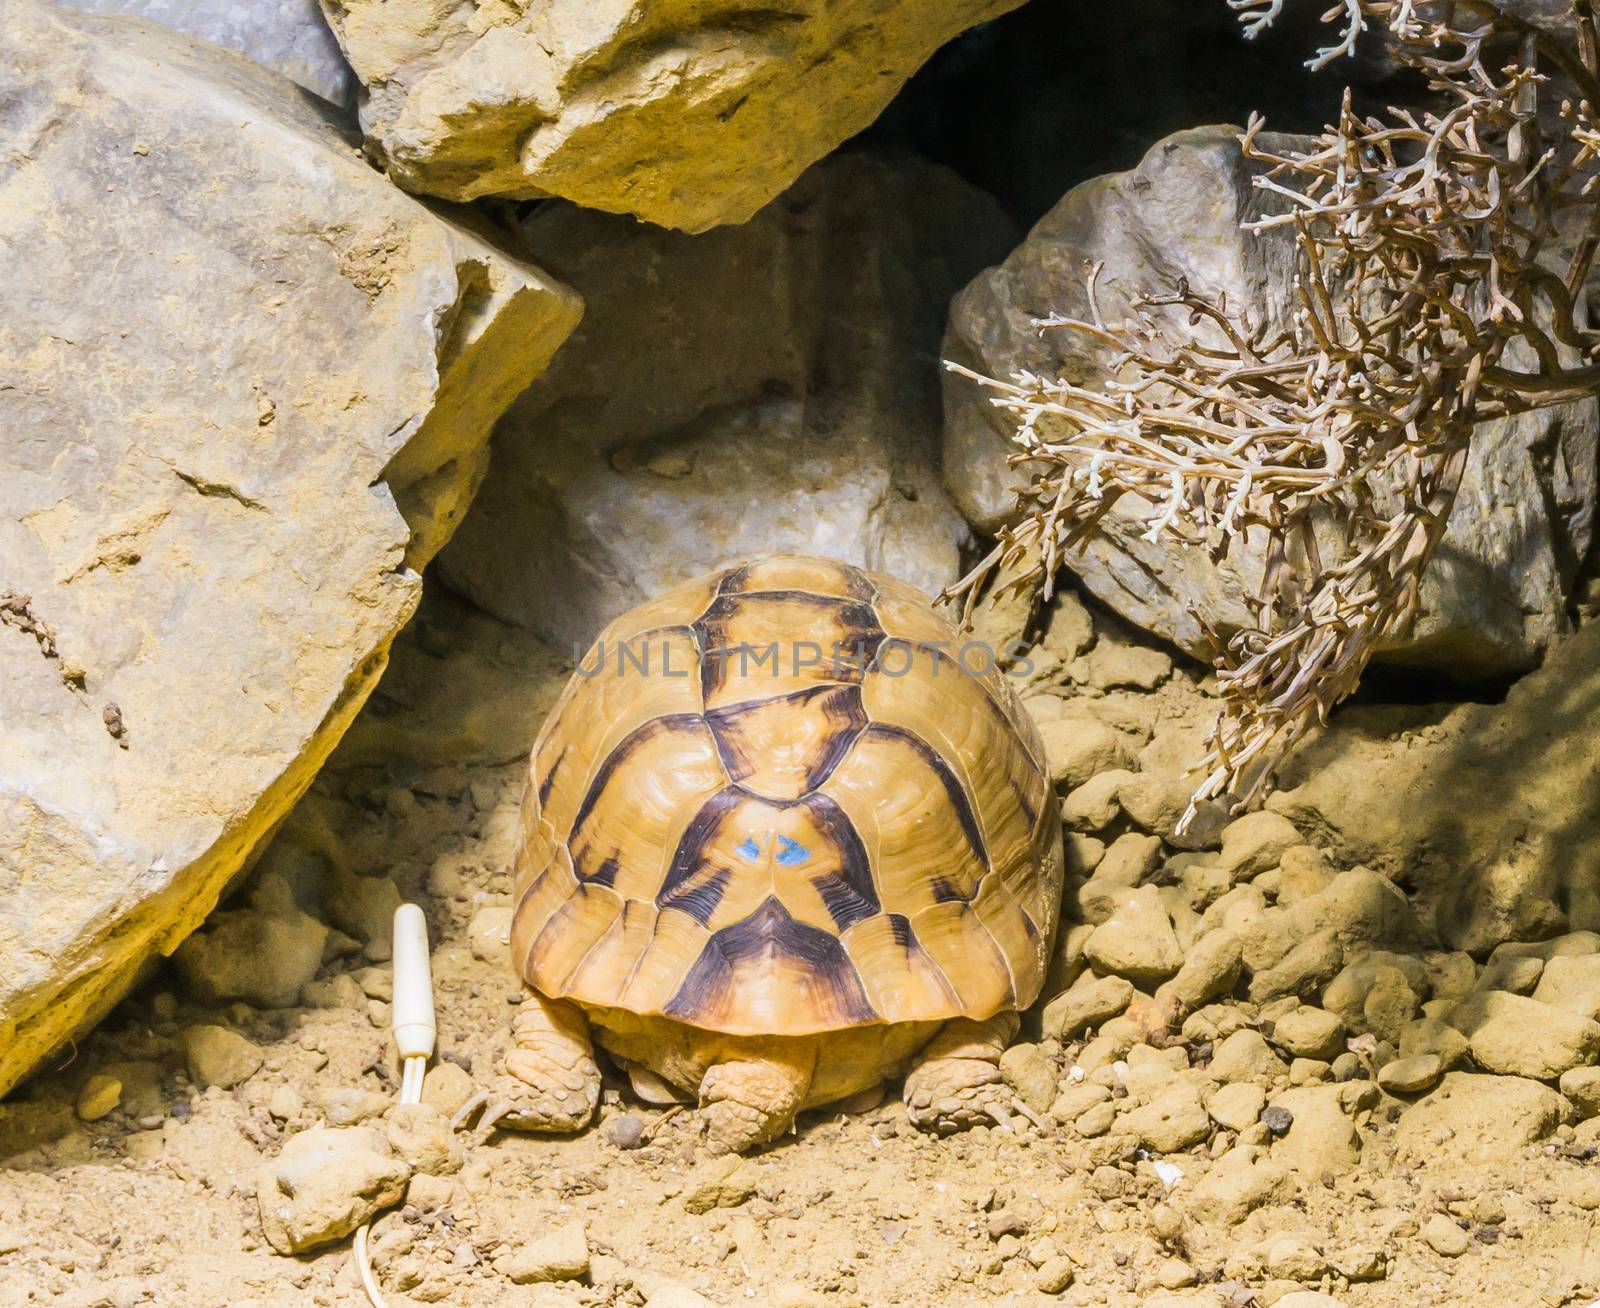 rare endangered egyptian tortoise turtle sleeping in the sand under some rocks by charlottebleijenberg